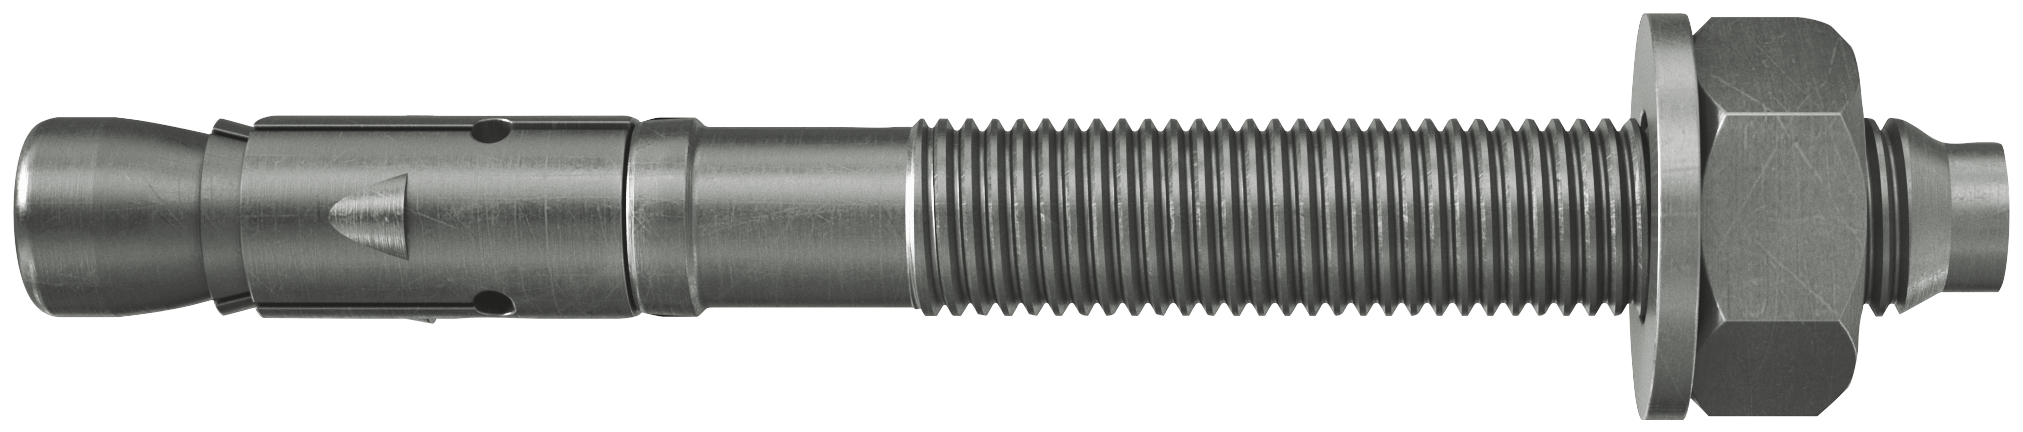 fischer Tassello acciaio FAZ II 8/10 A4 (50 Pz.) L'ancorante ad espansione ad alte prestazioni per carichi statici su calcestruzzo fessurato e per applicazioni sismiche. Versione in acciaio inossidabile con classe di resistenza alla corrosione CRC III..